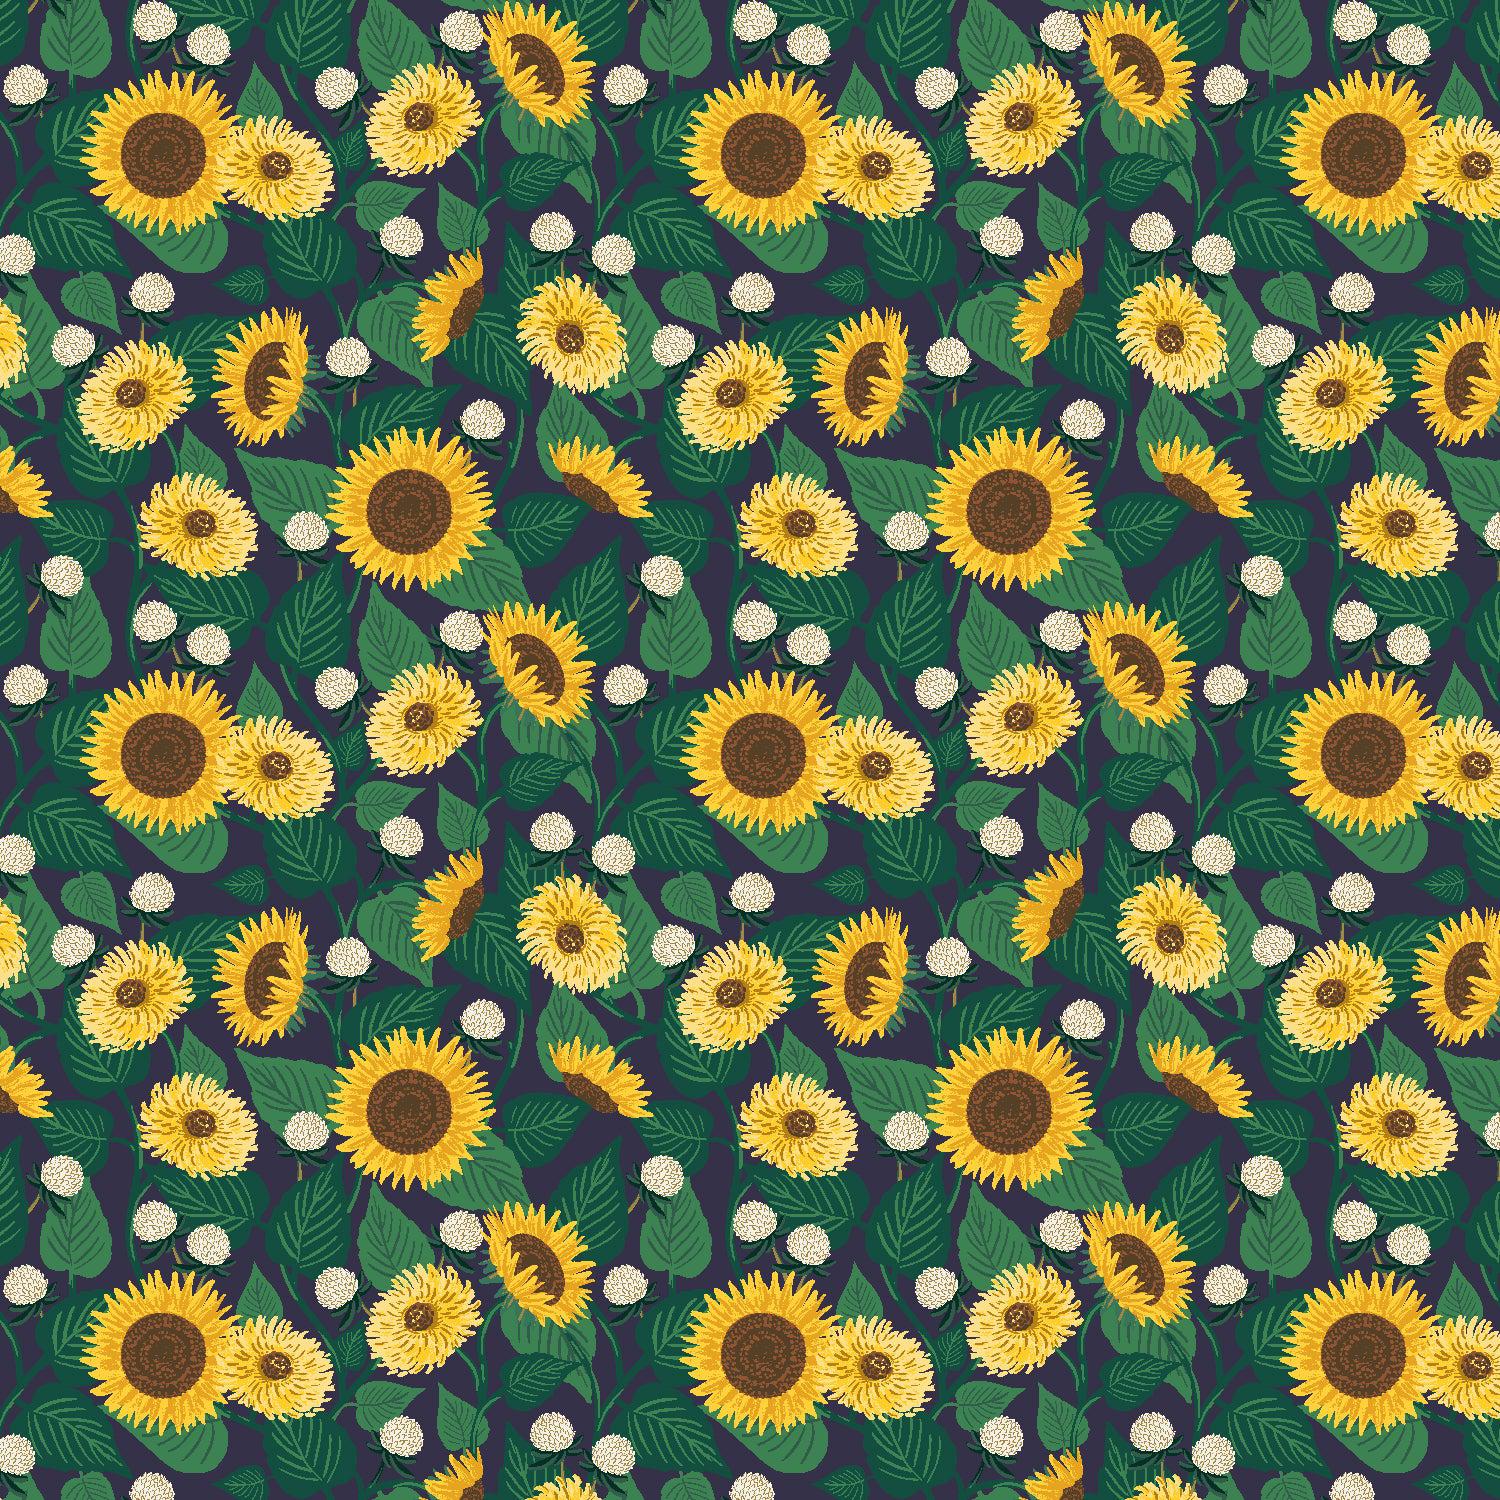 Cotton + Steel-Sunflower Fields Navy-fabric-gather here online